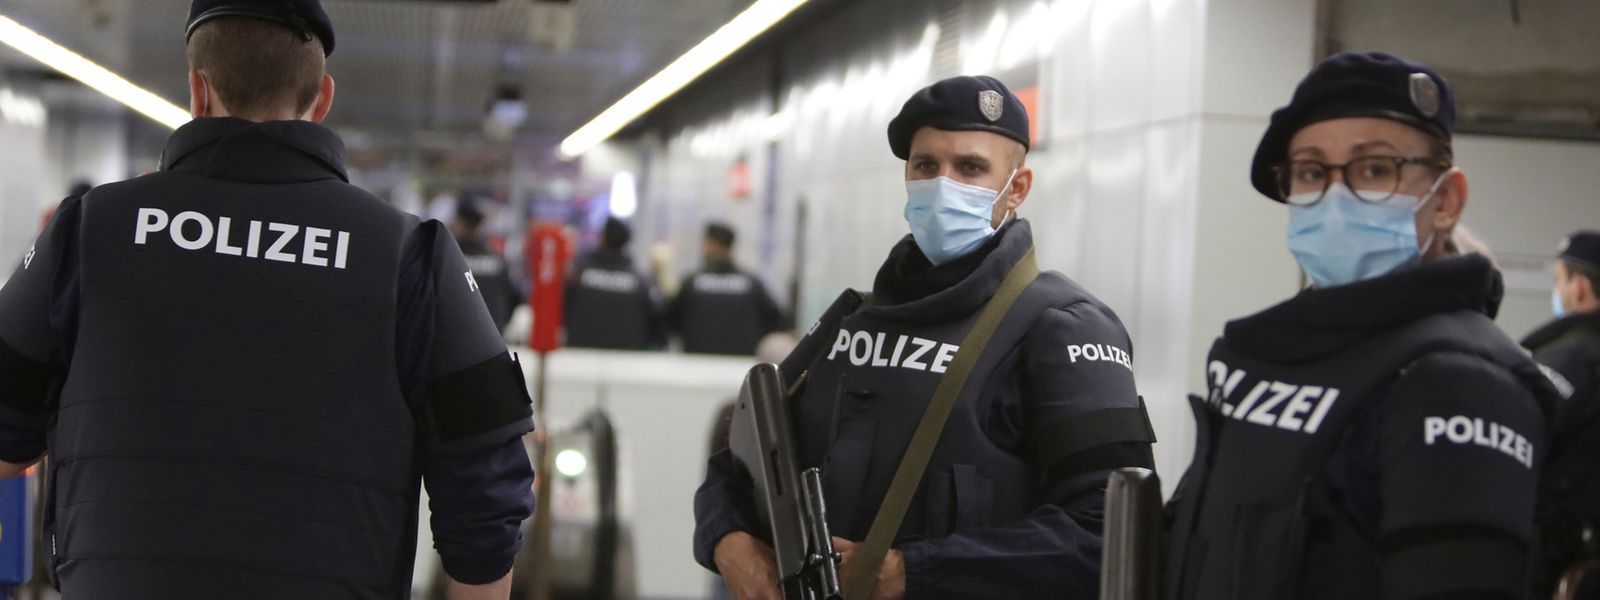 Eine Stadt in Habachtstellung: In den Wiener U-Bahn-Stationen patrouillieren am Dienstag zahlreiche Polizisten.